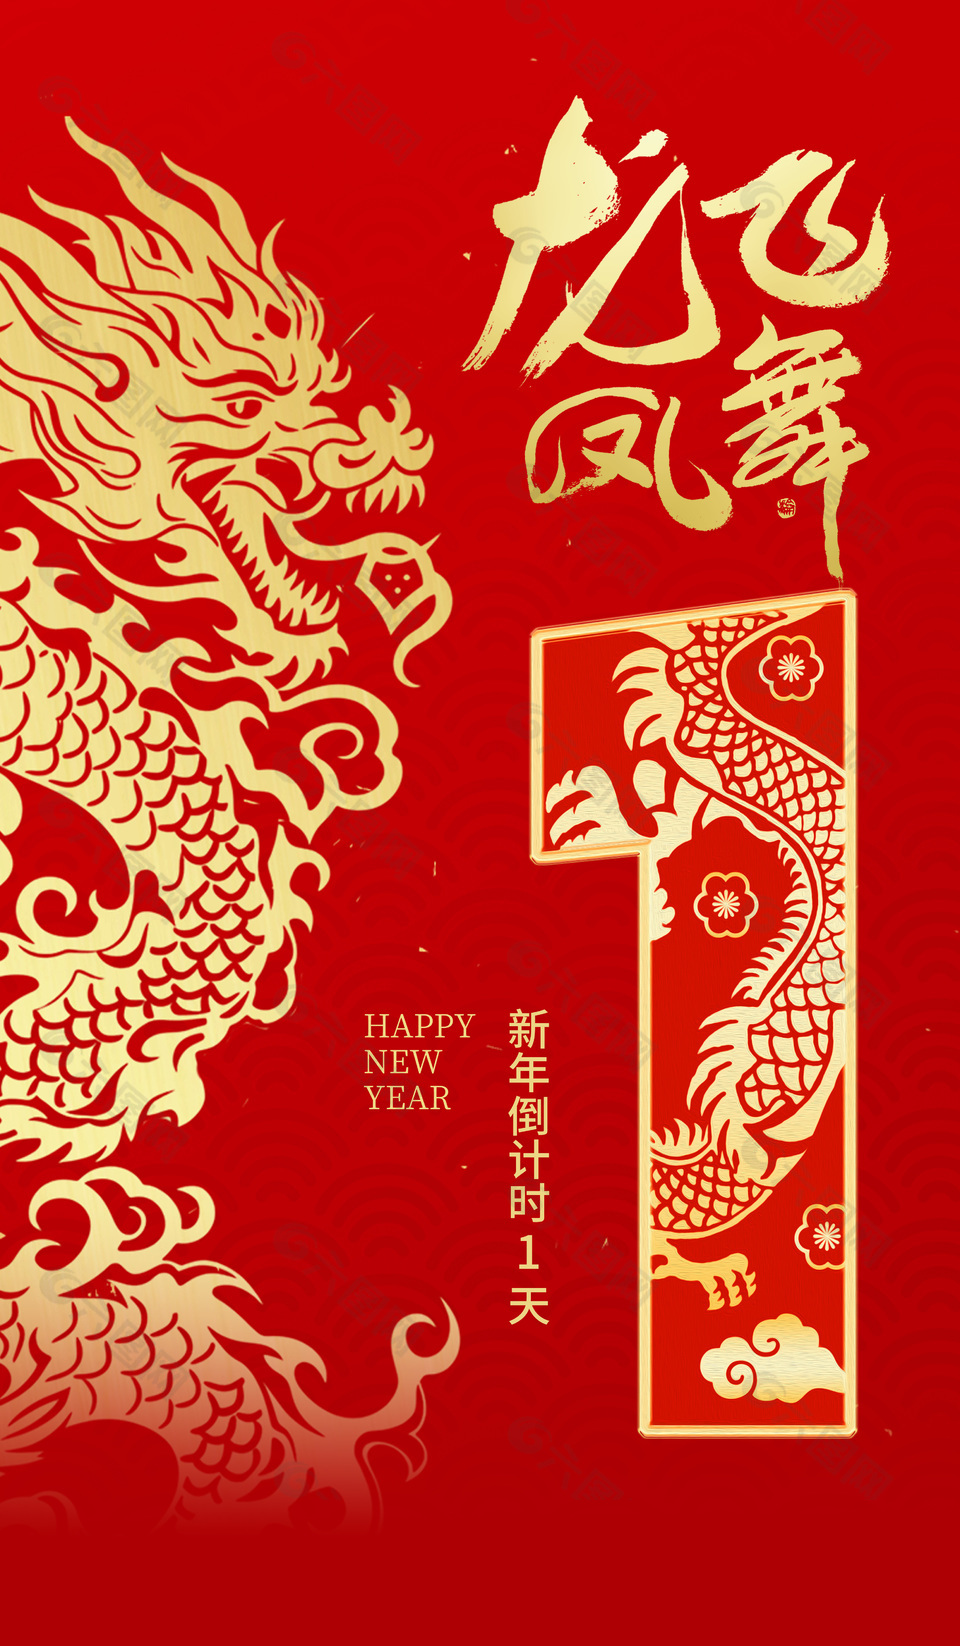 龙飞凤舞新年倒计时1天中国风元素海报